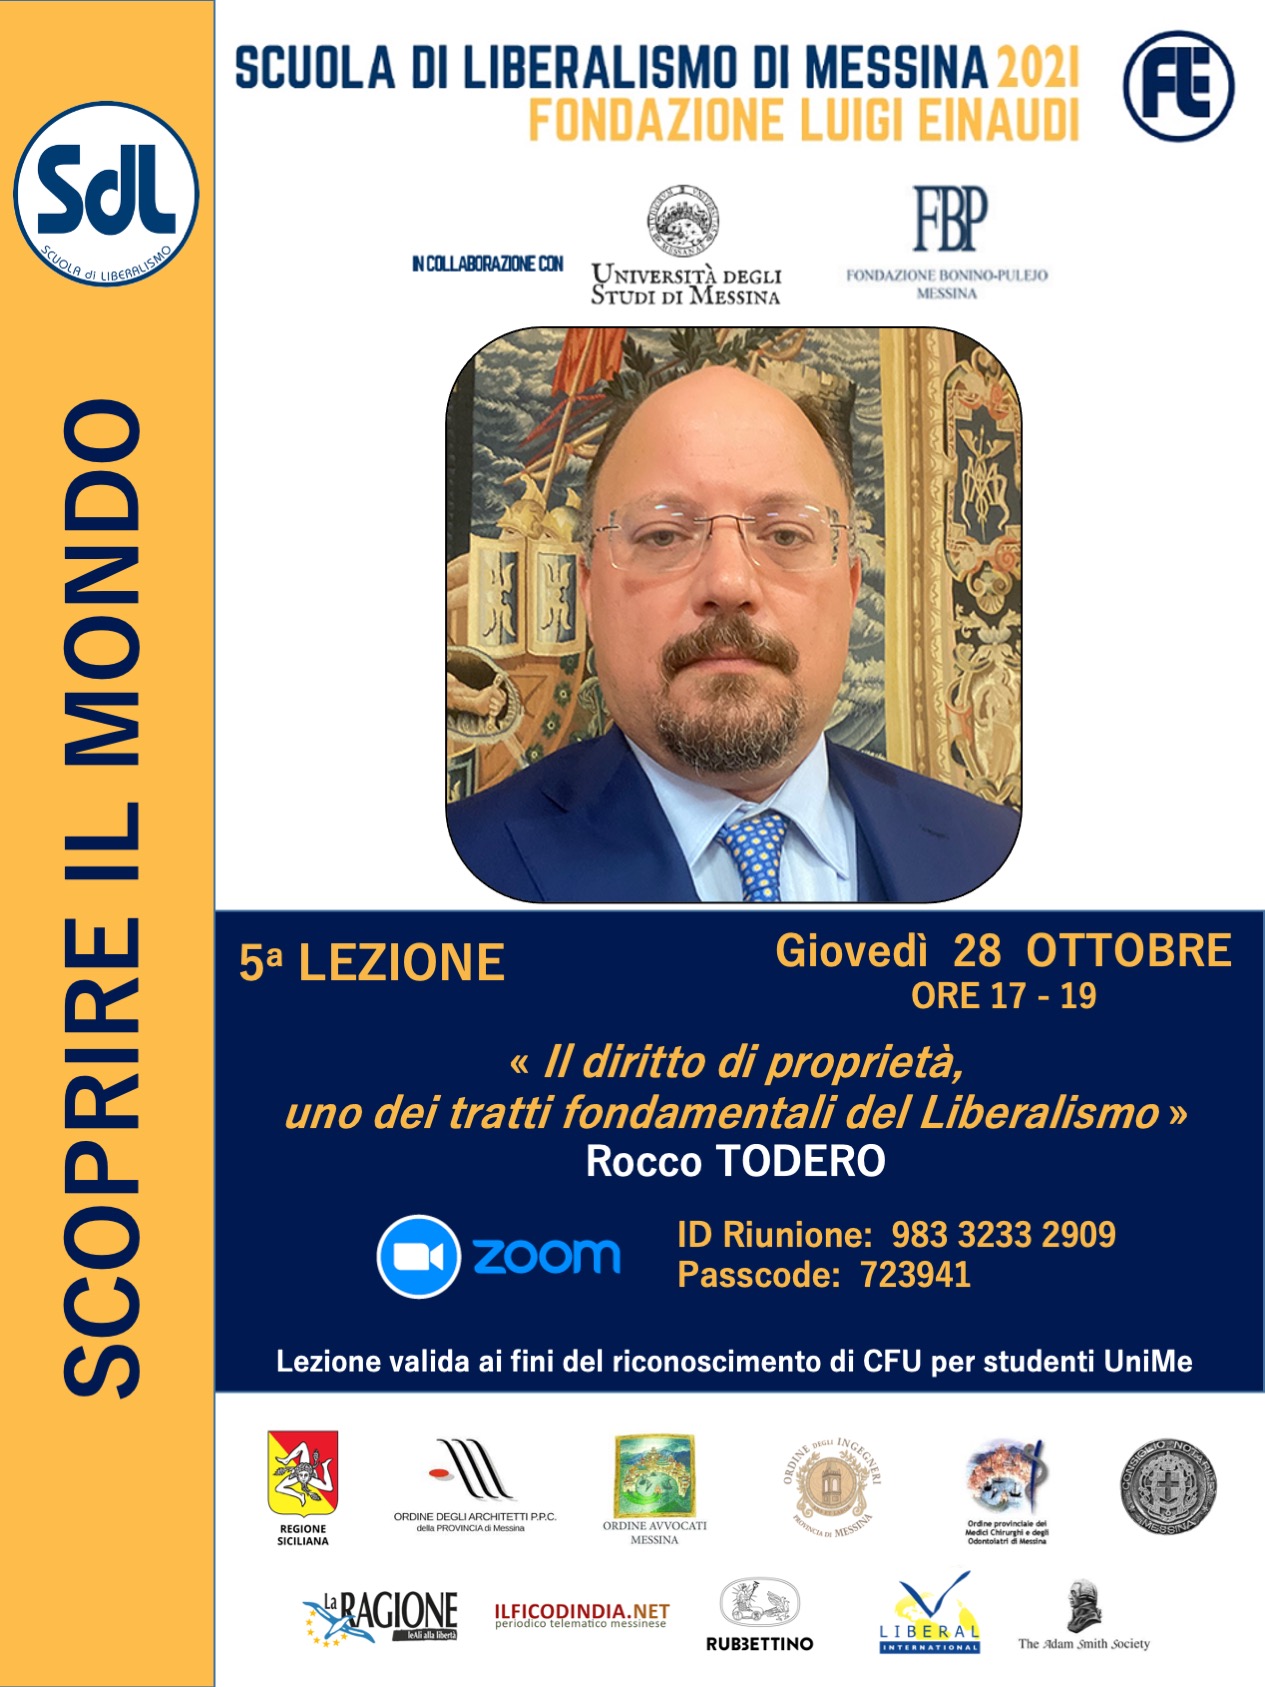 Scuola di Liberalismo 2021 – Messina: lezione di Rocco Todero sul tema “Il diritto di proprietà, uno dei tratti fondamentali del Liberalismo”